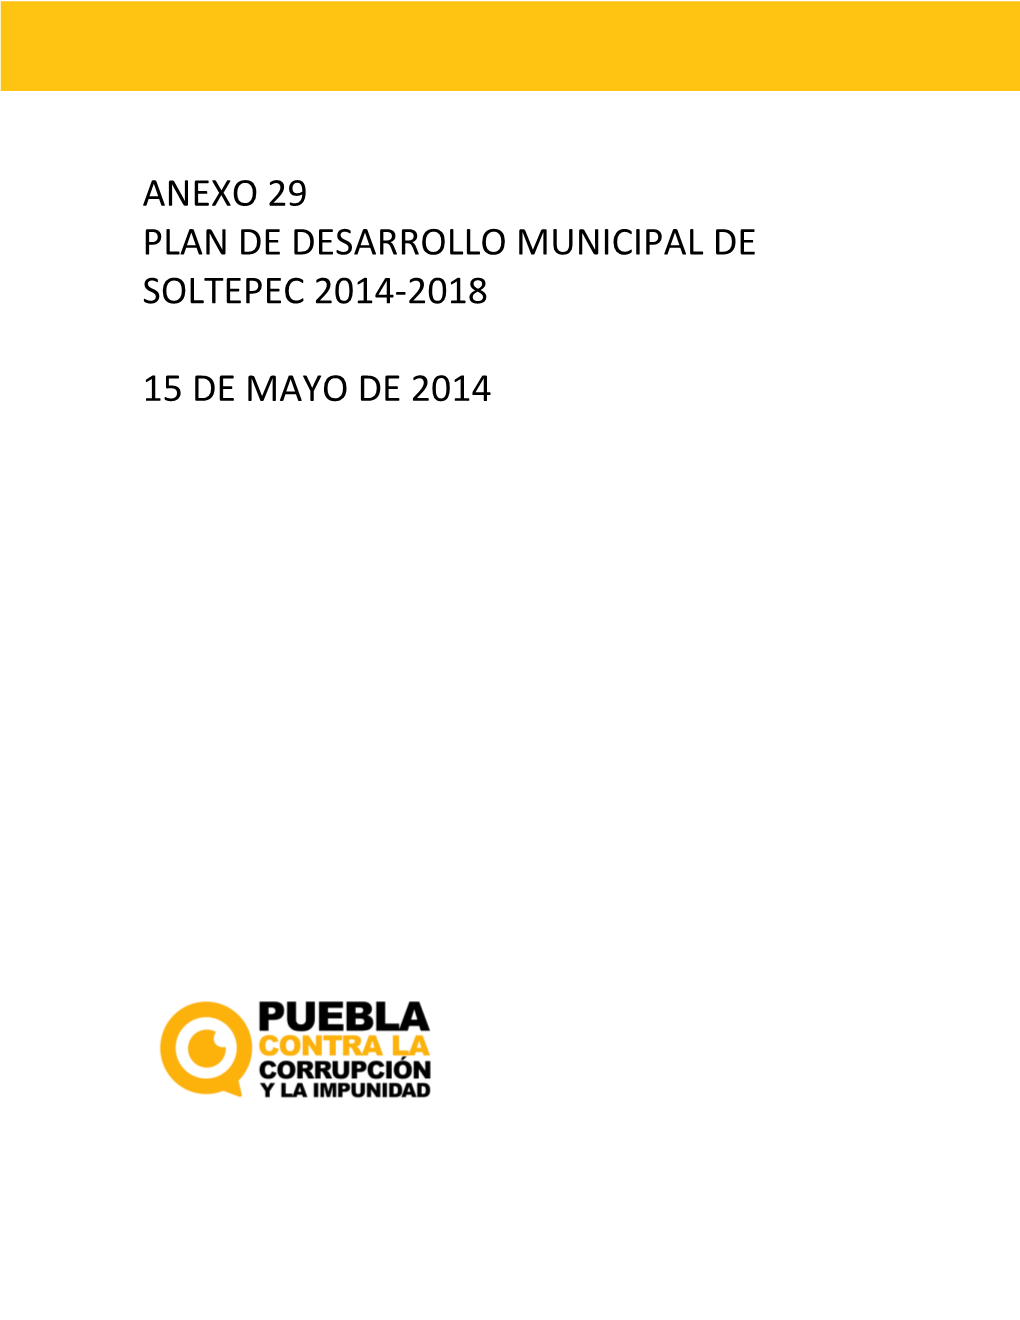 Plan De Desarrollo Municipal De Soltepec 2014-2018